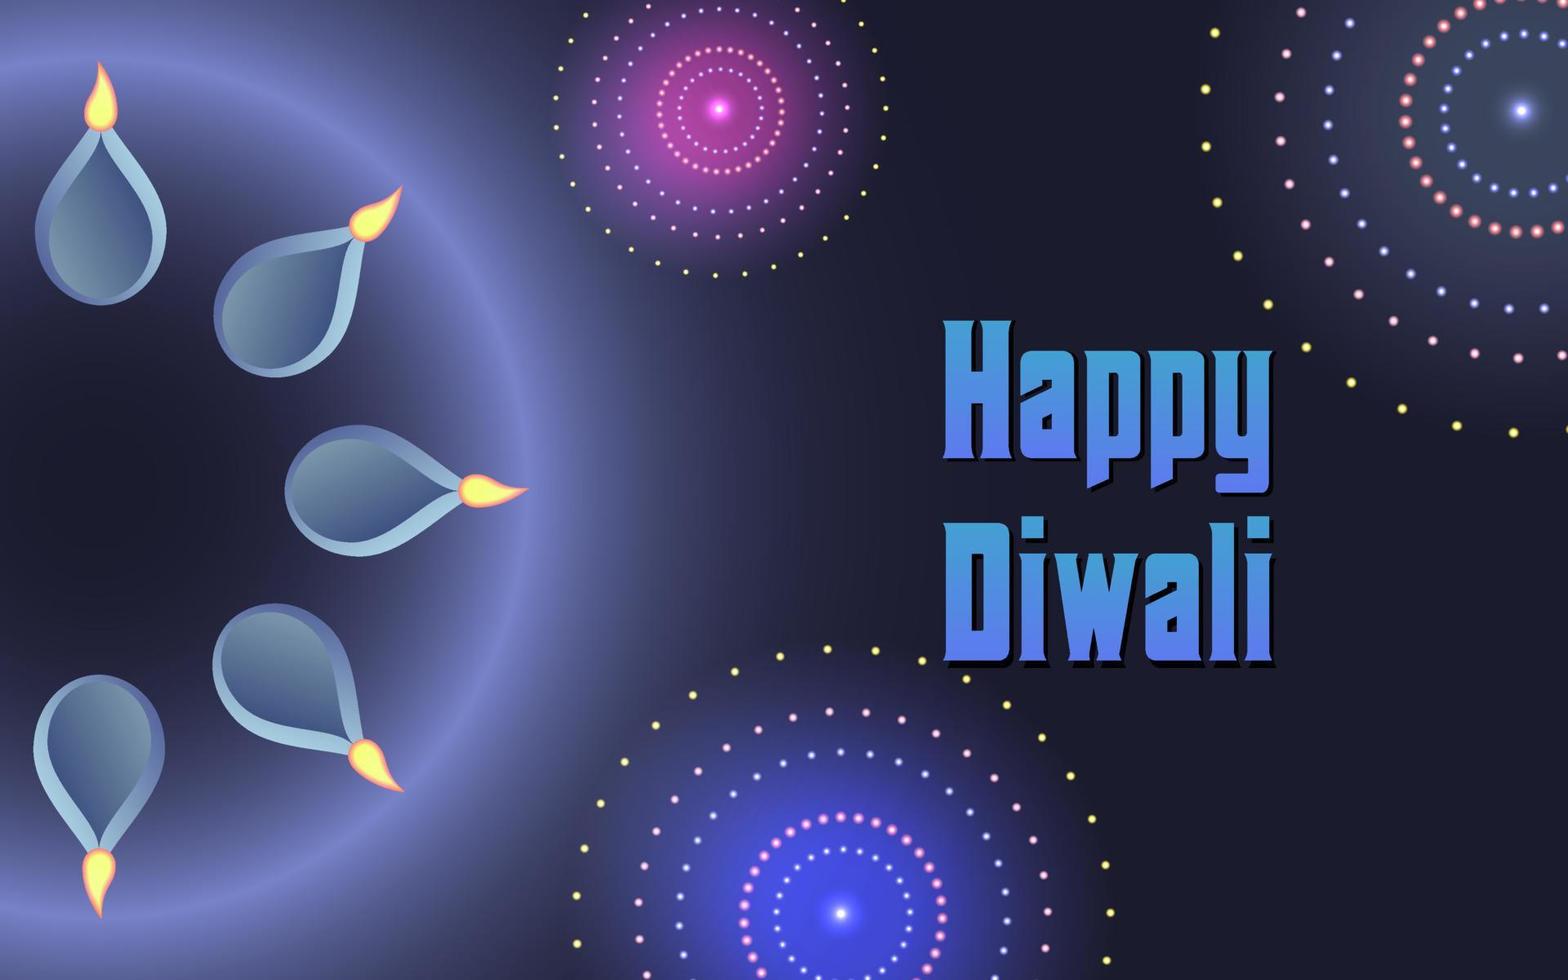 glad diwali vektor illustration, glad diwali vektor banner illustration med diya - oljelampa, diwali illustration med typografi, kreativ diwali vektor design för gratulationskort och bakgrund.